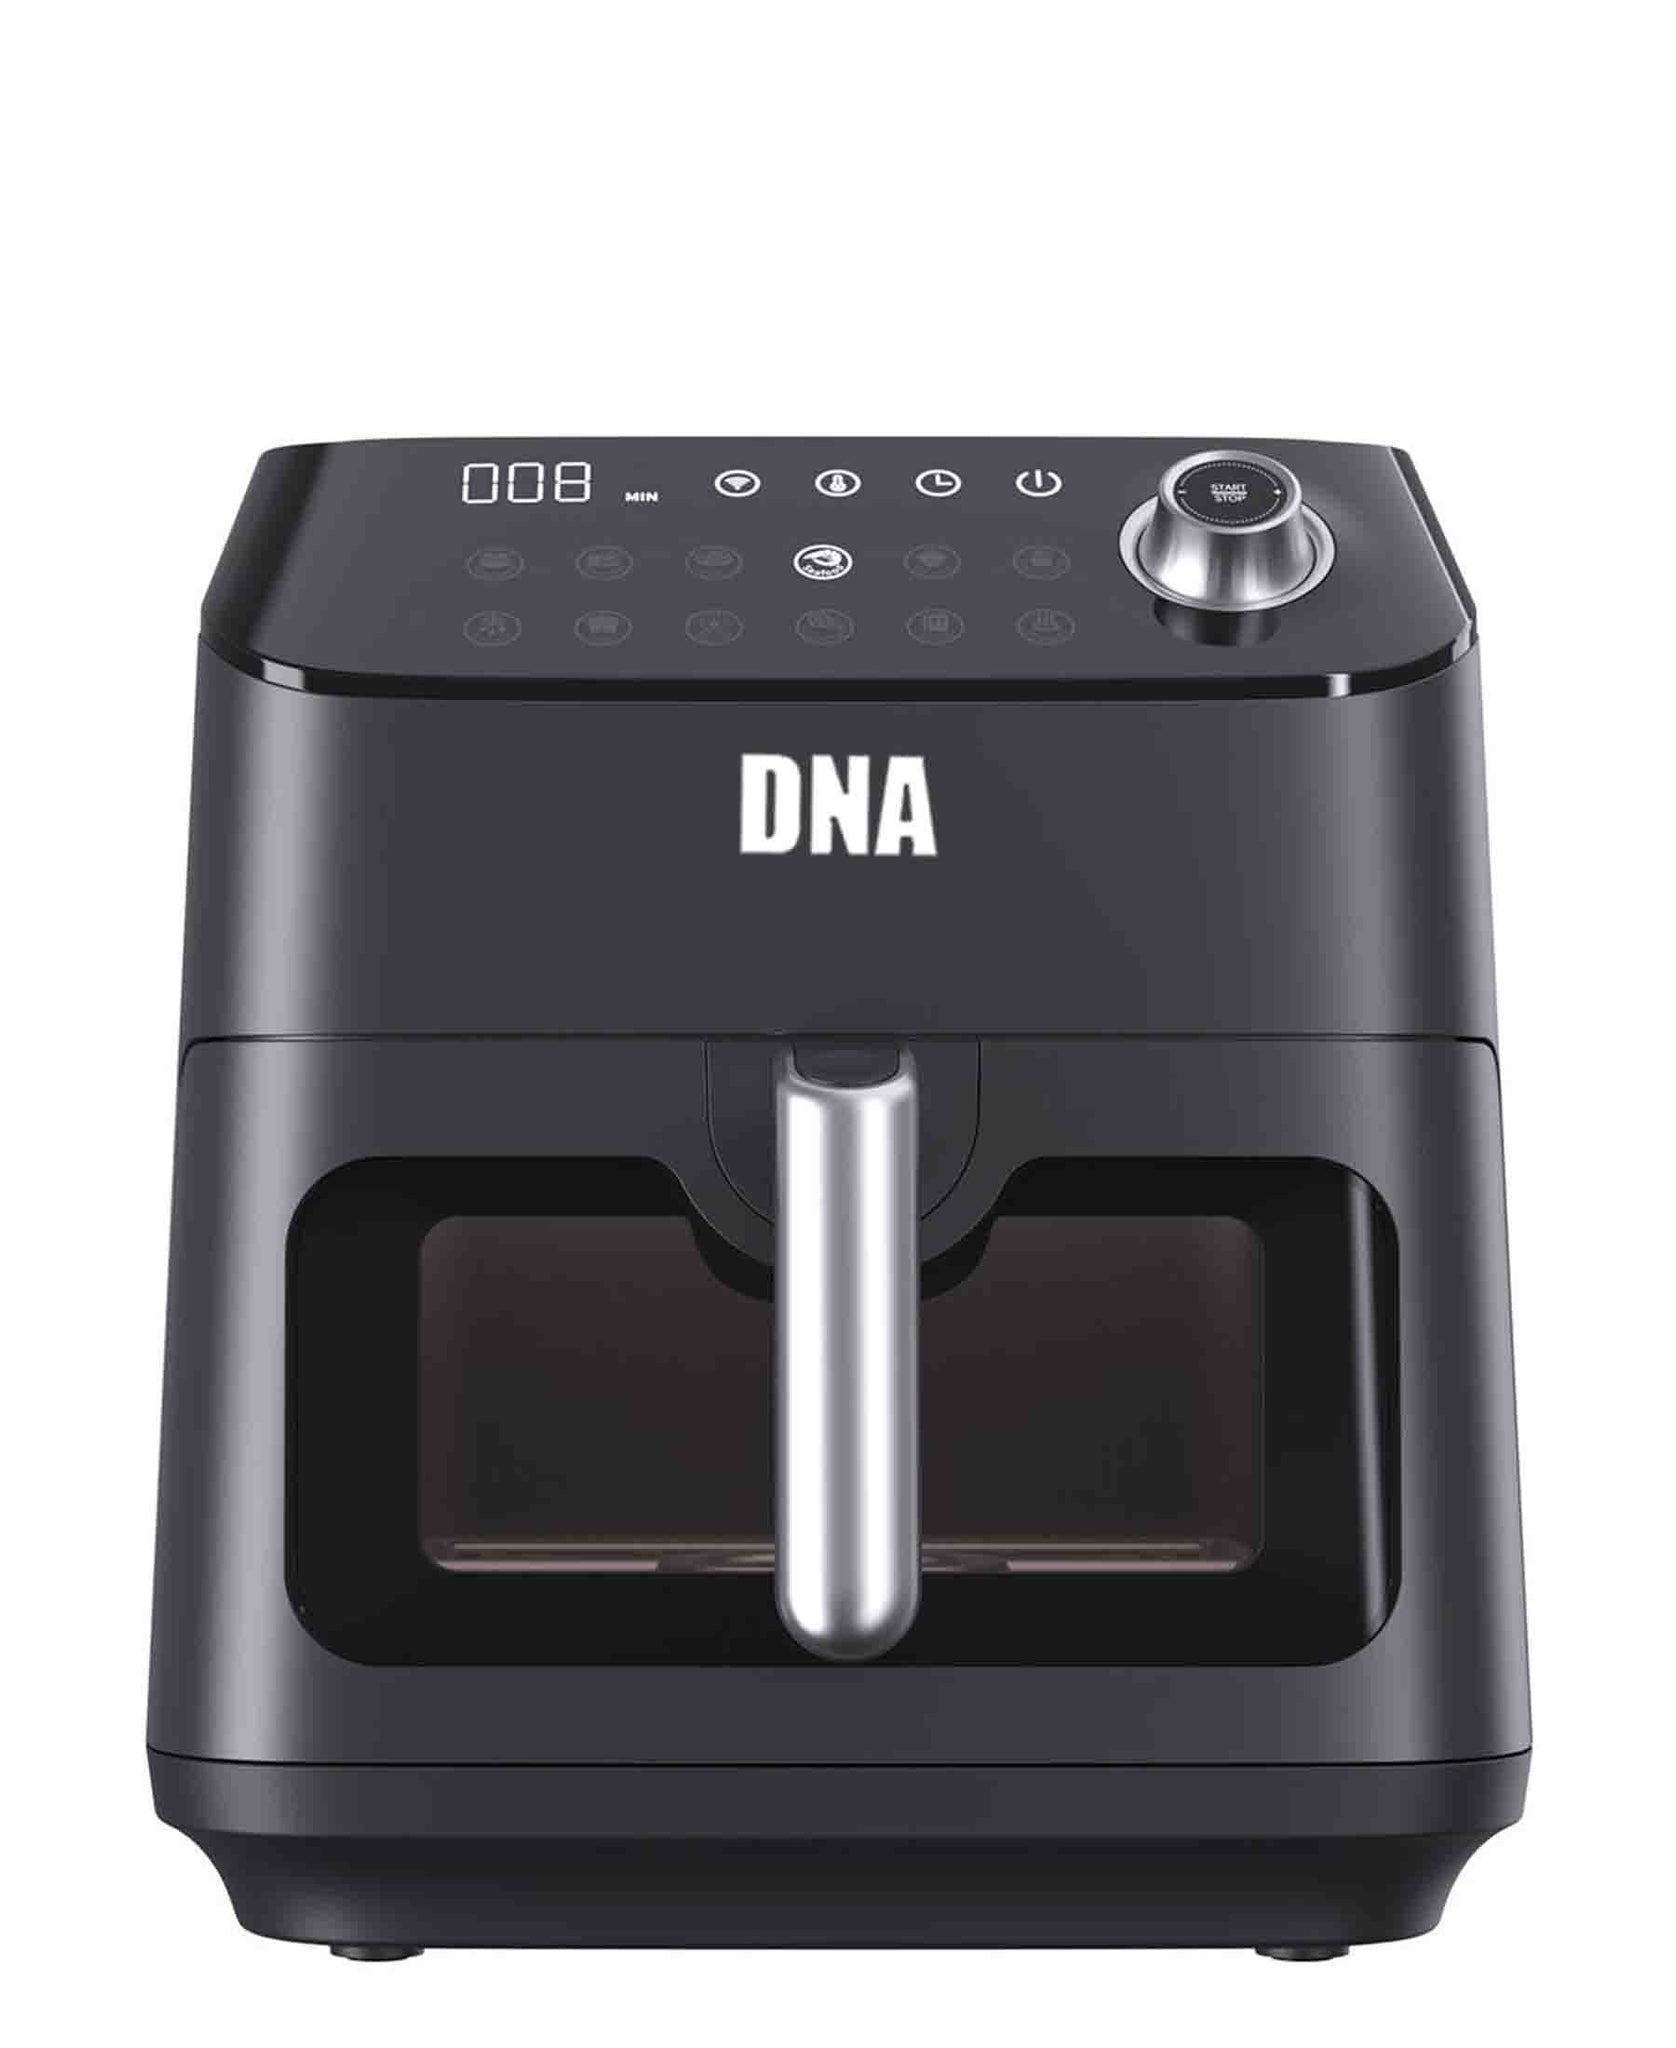 DNA 5.7L Smart Air Fryer - Black